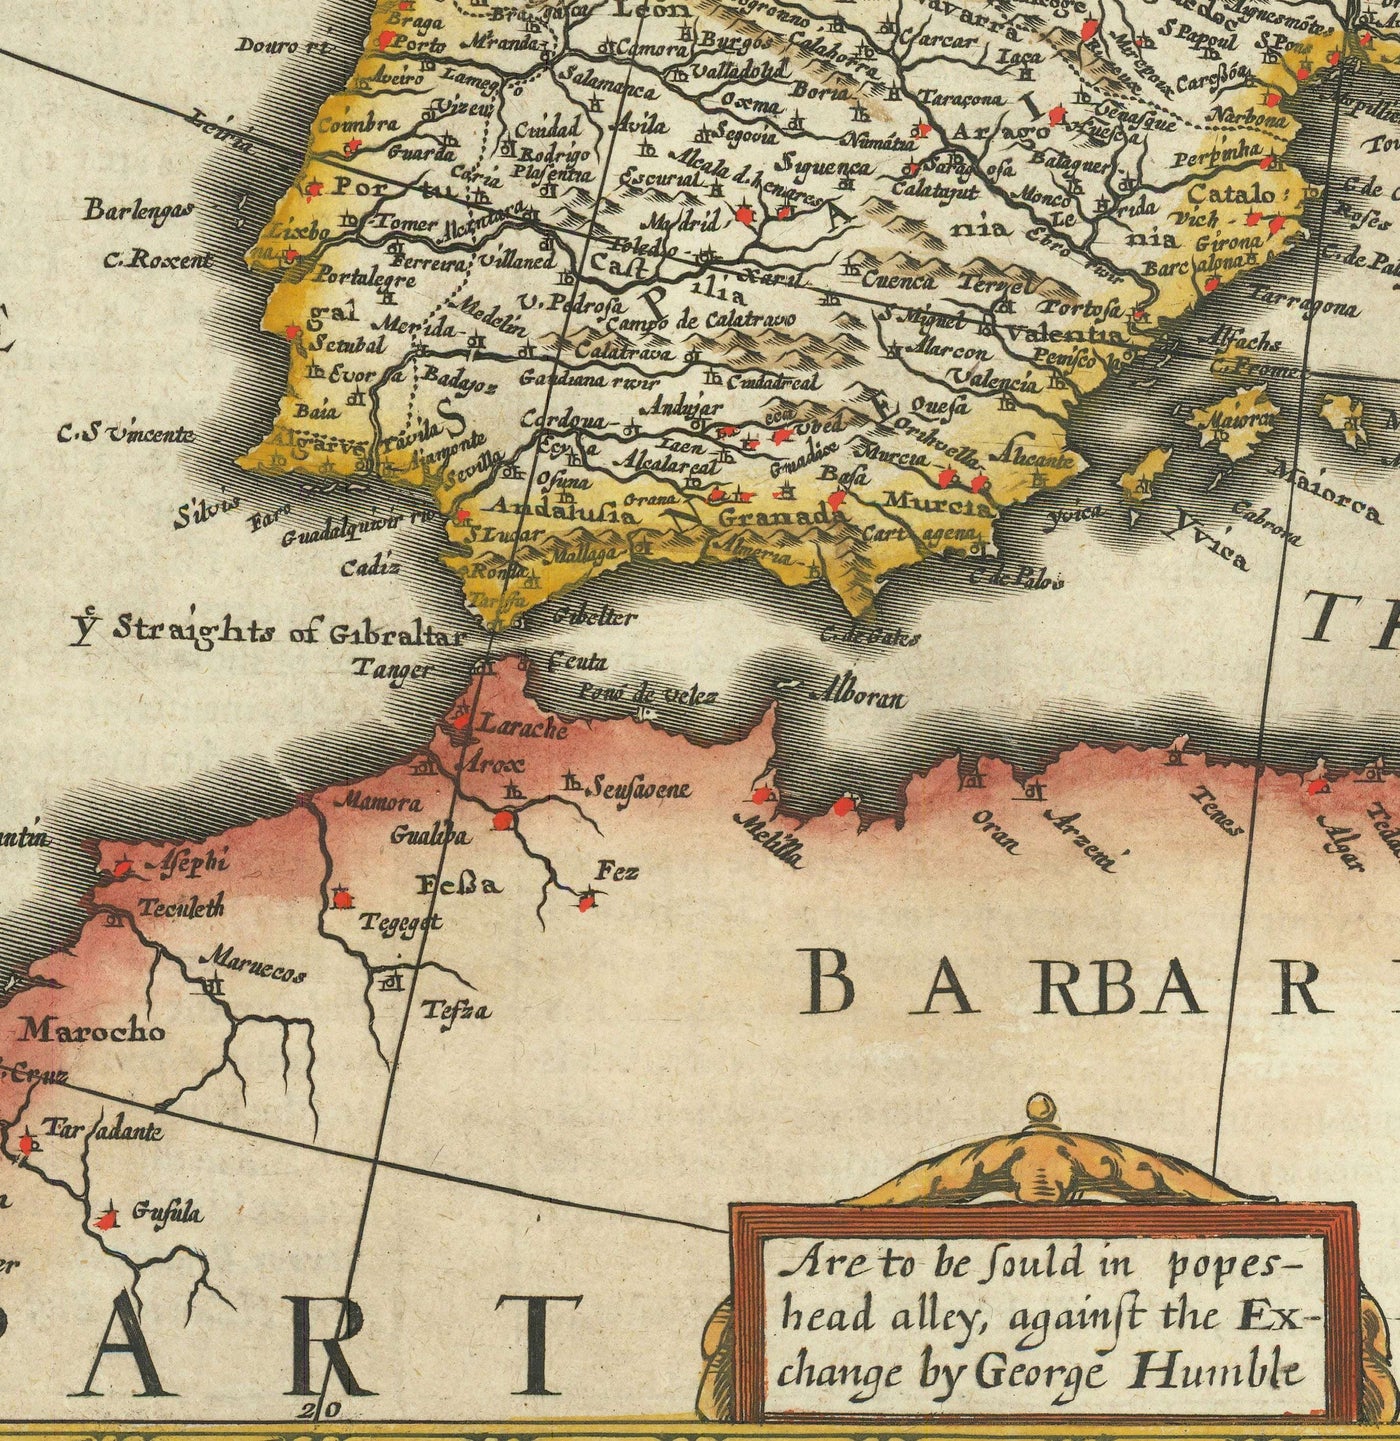 Alte Karte von Europa von John Speed, 1627 - England, Frankreich, Deutschland, Italien, Russland - Städte, Jakobekleidung